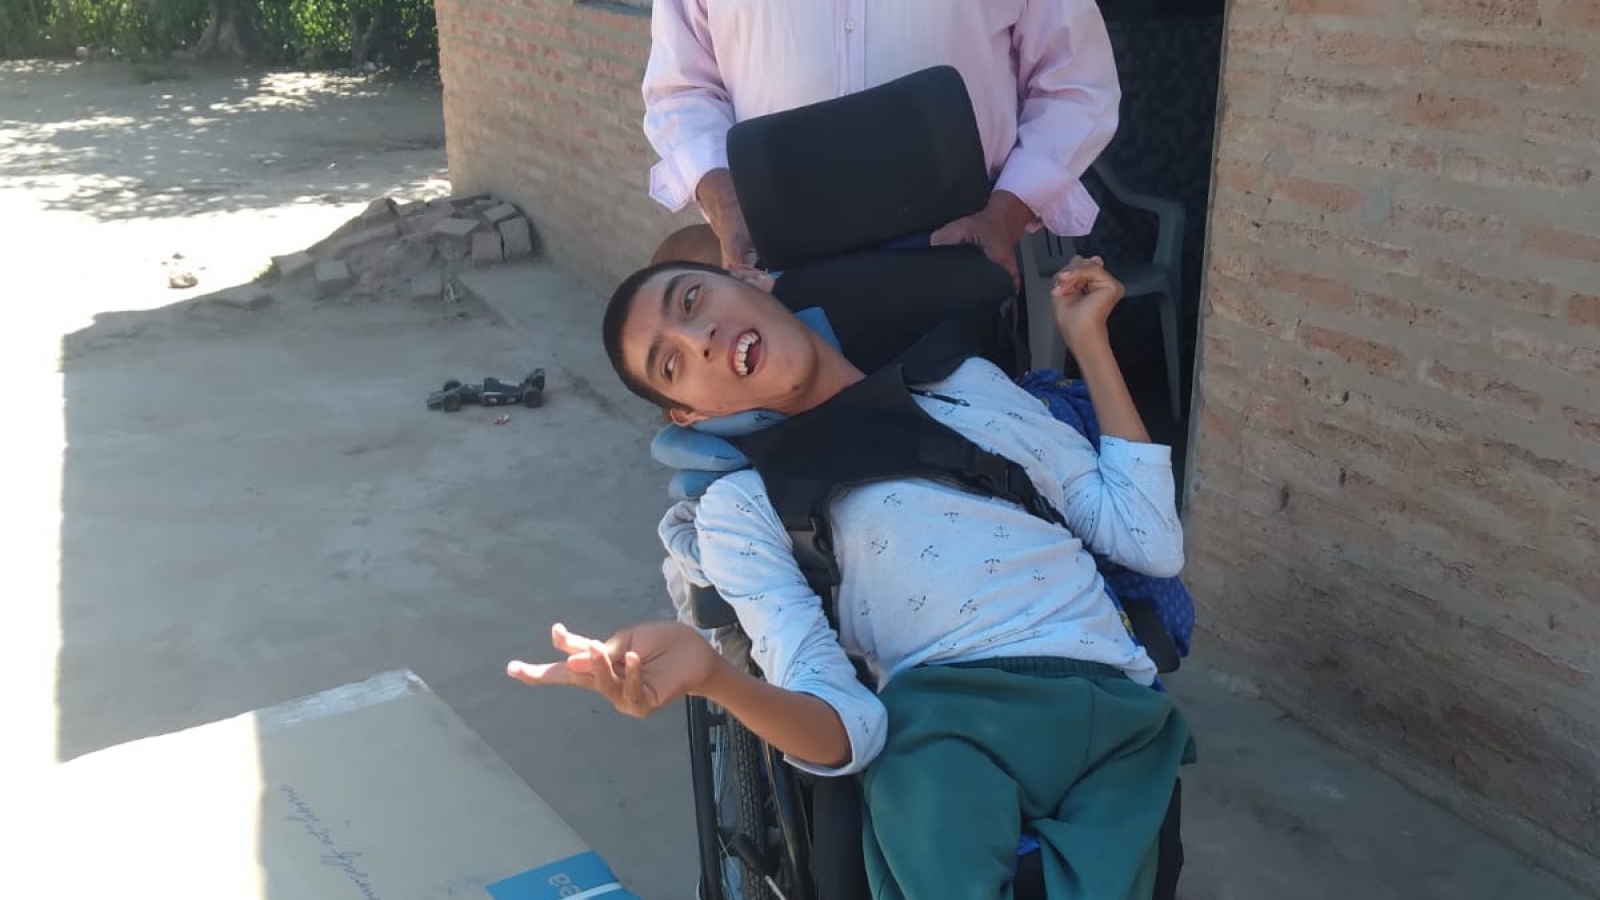 Persona parada con su hijo en silla de ruedas sonriendo frente a cámara